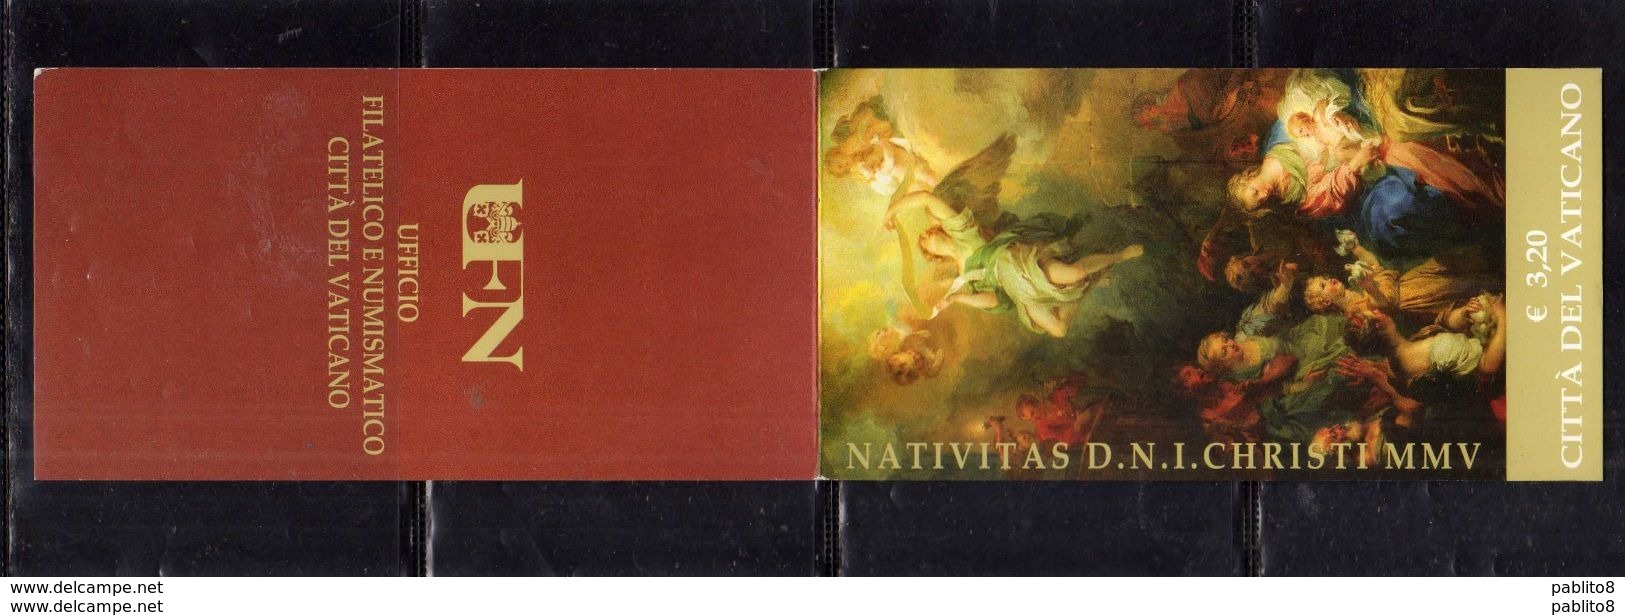 CITTÀ DEL VATICANO VATICAN VATIKAN 2005 NATALE CHRISTMAS NOEL WEIHNACHTEN NAVIDAD NATAL EURO 0,80 LIBRETTO BOOKLET  MNH - Libretti